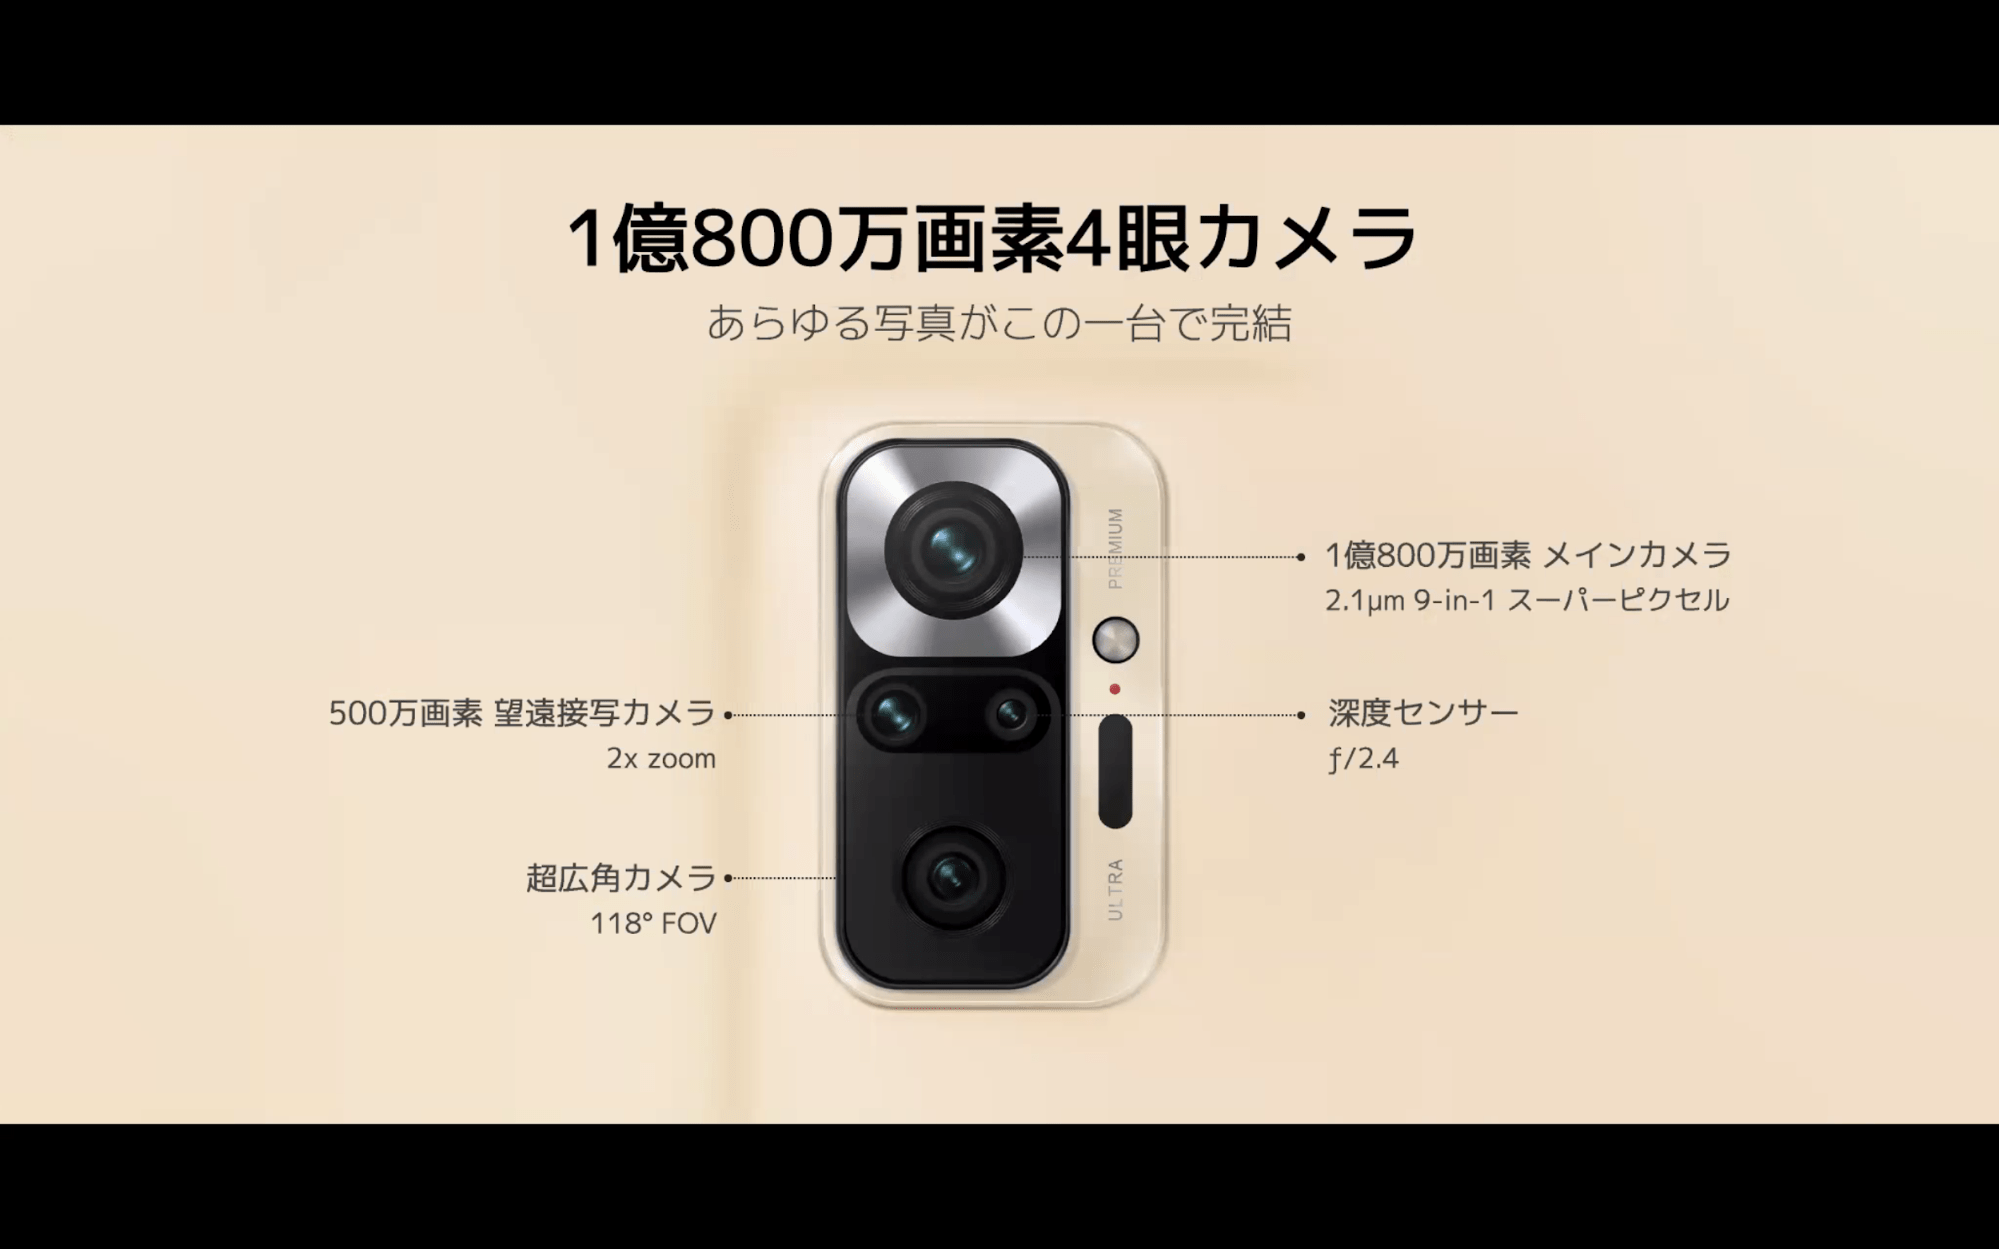 中価格帯を再定義──3.5万円で1億8000万画素のカメラを搭載する